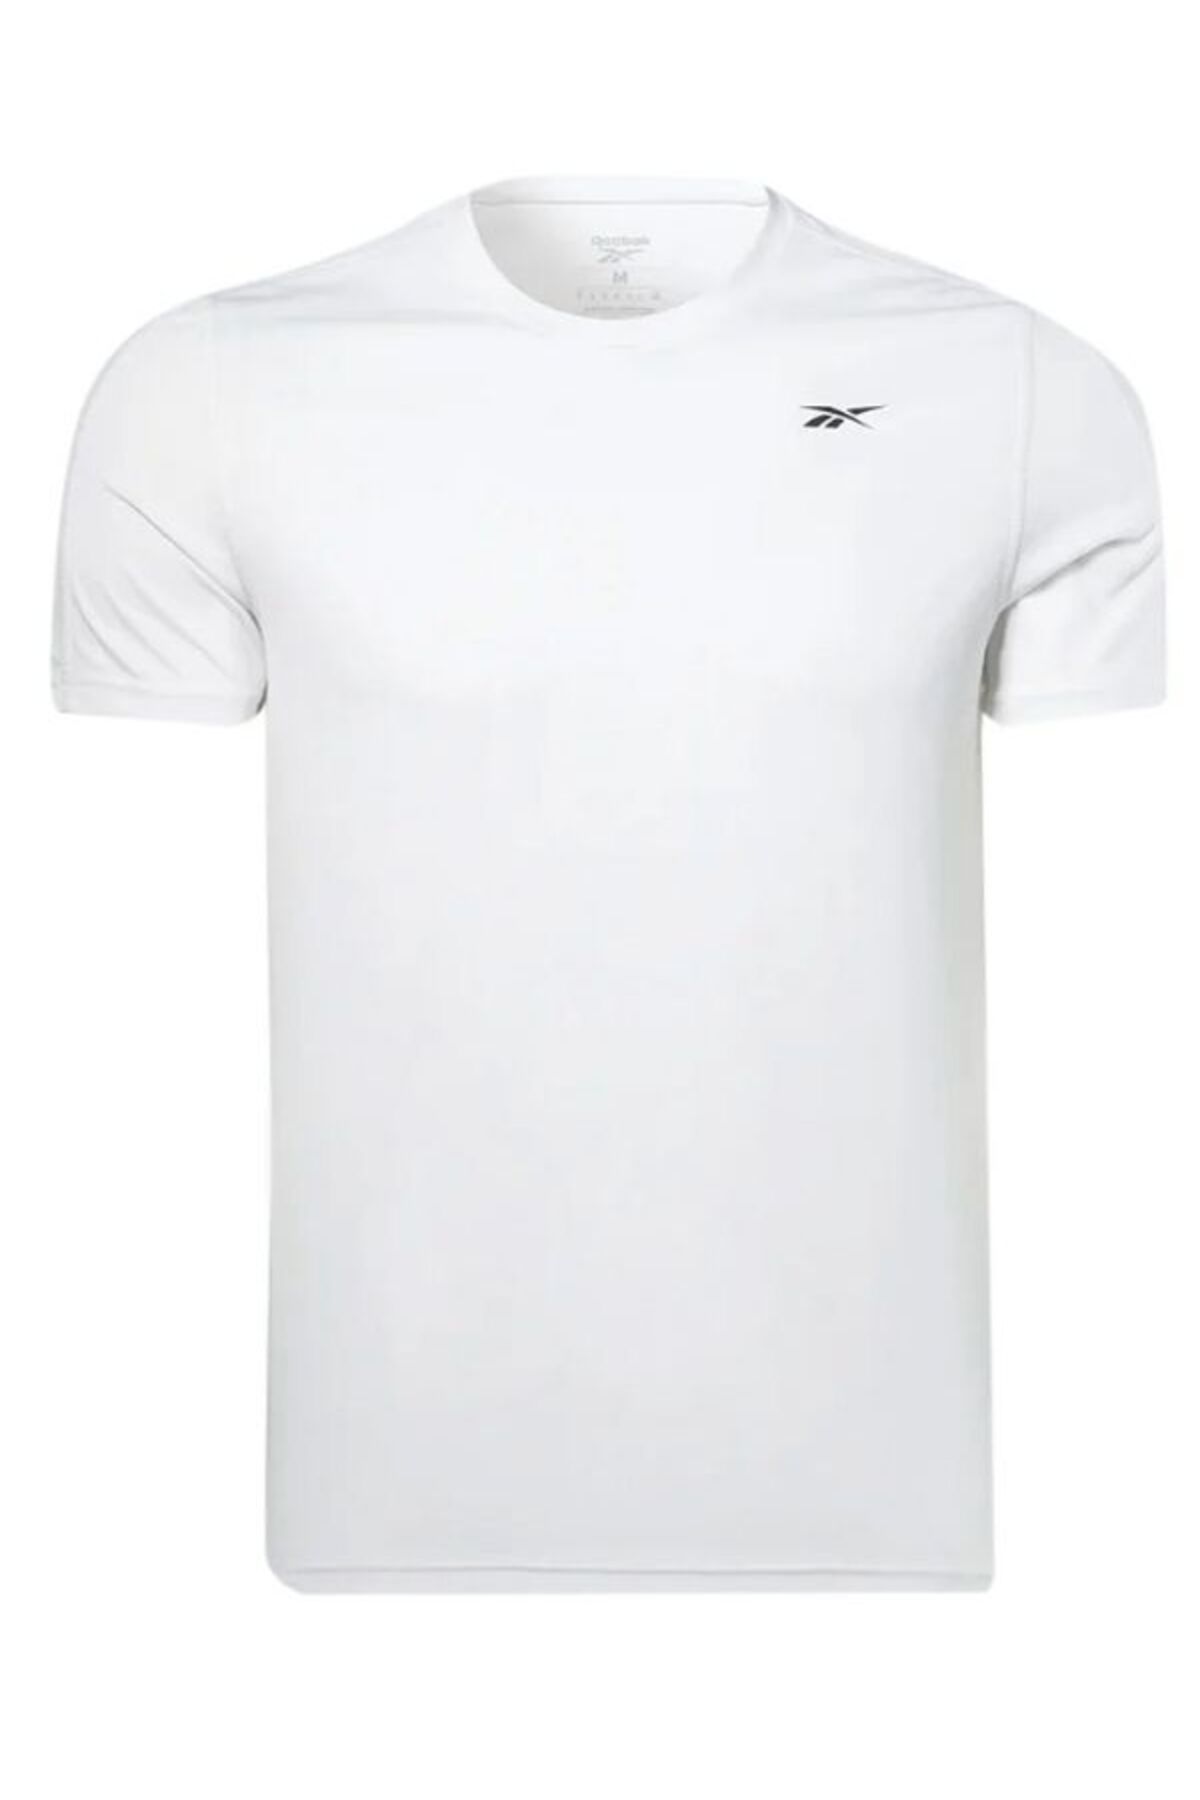 Reebok Erkek Günlük Spor T-shirts Ss Tech Tee Iu4109